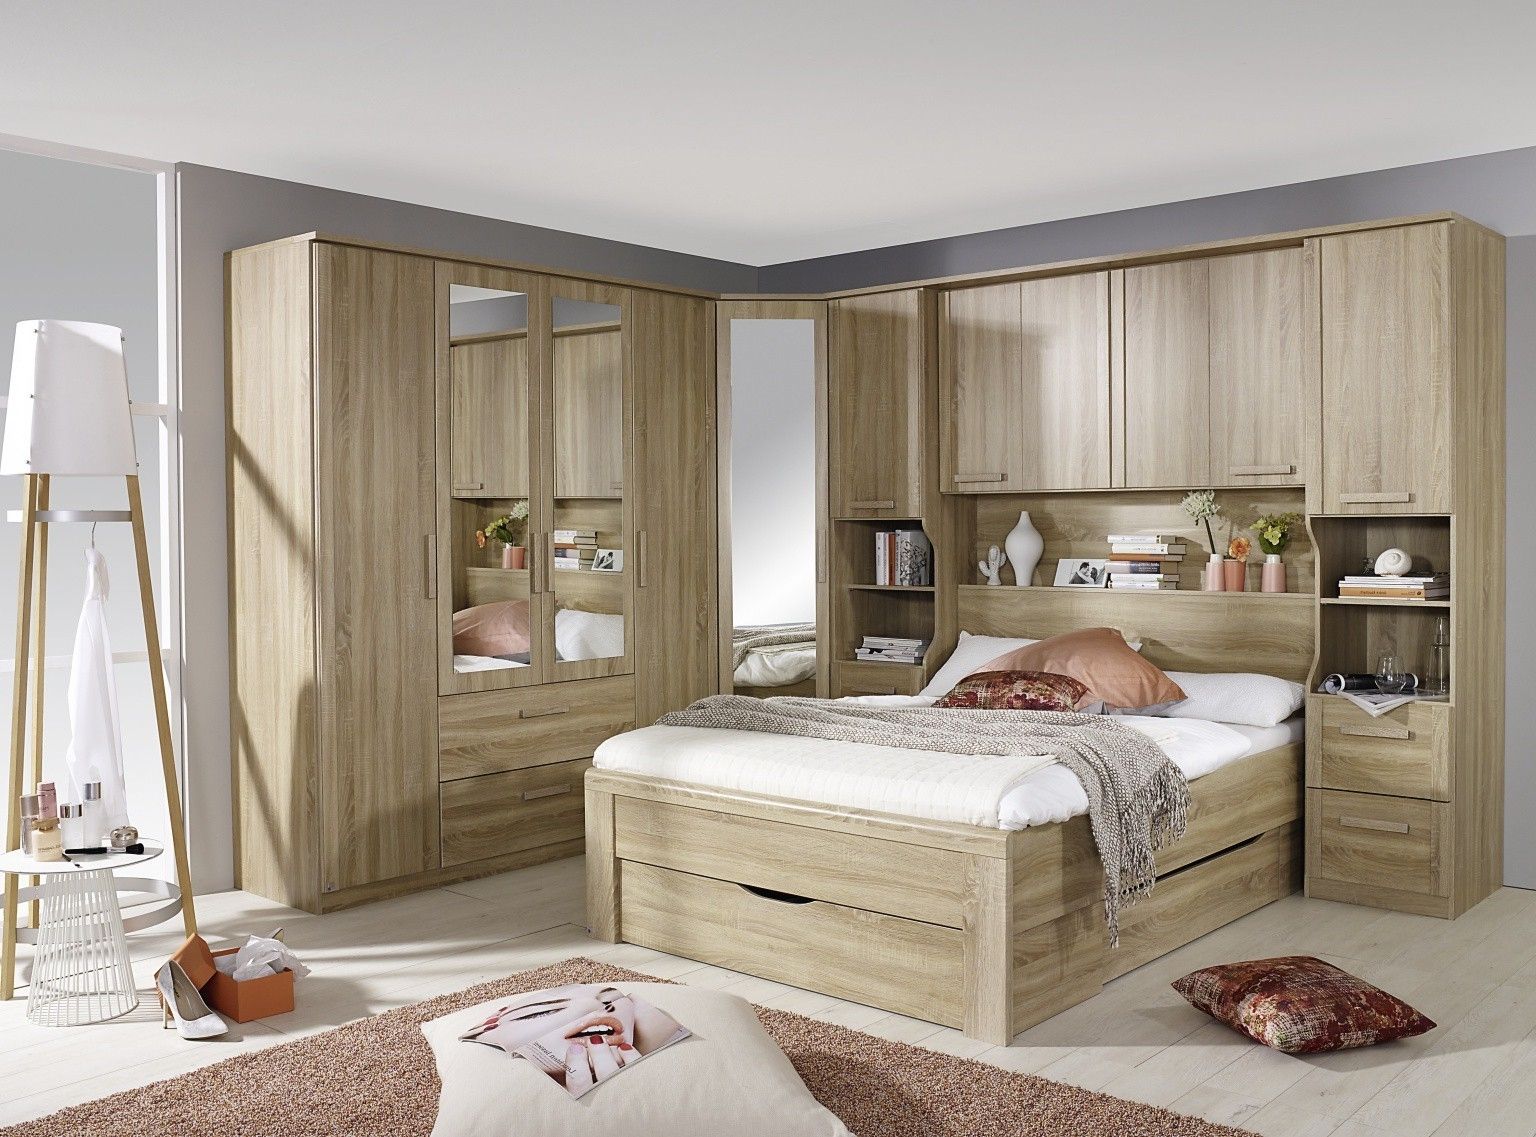 storage unit for bedroom furniture